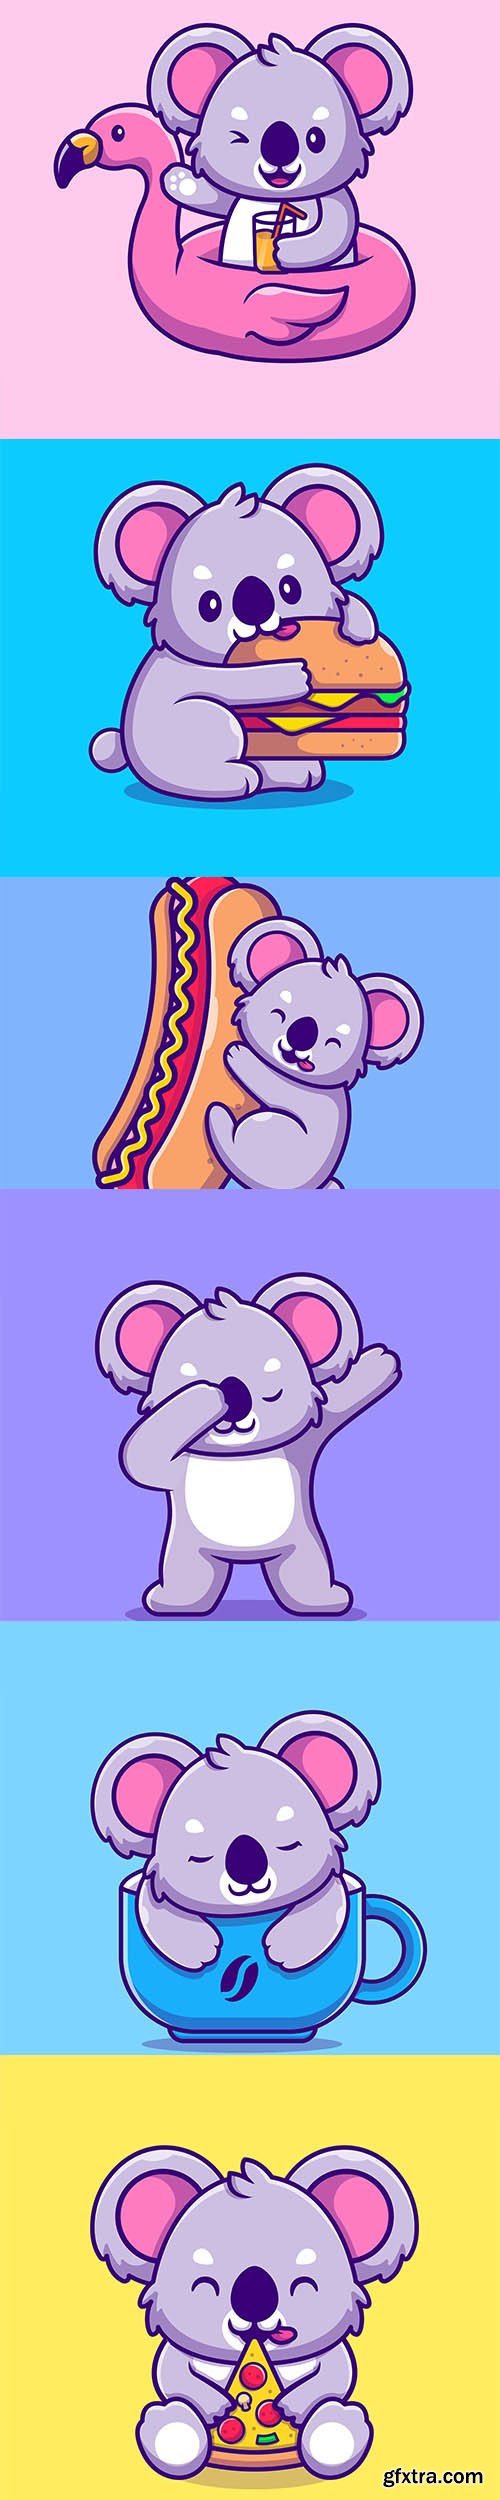 Cute Koala Illustrations